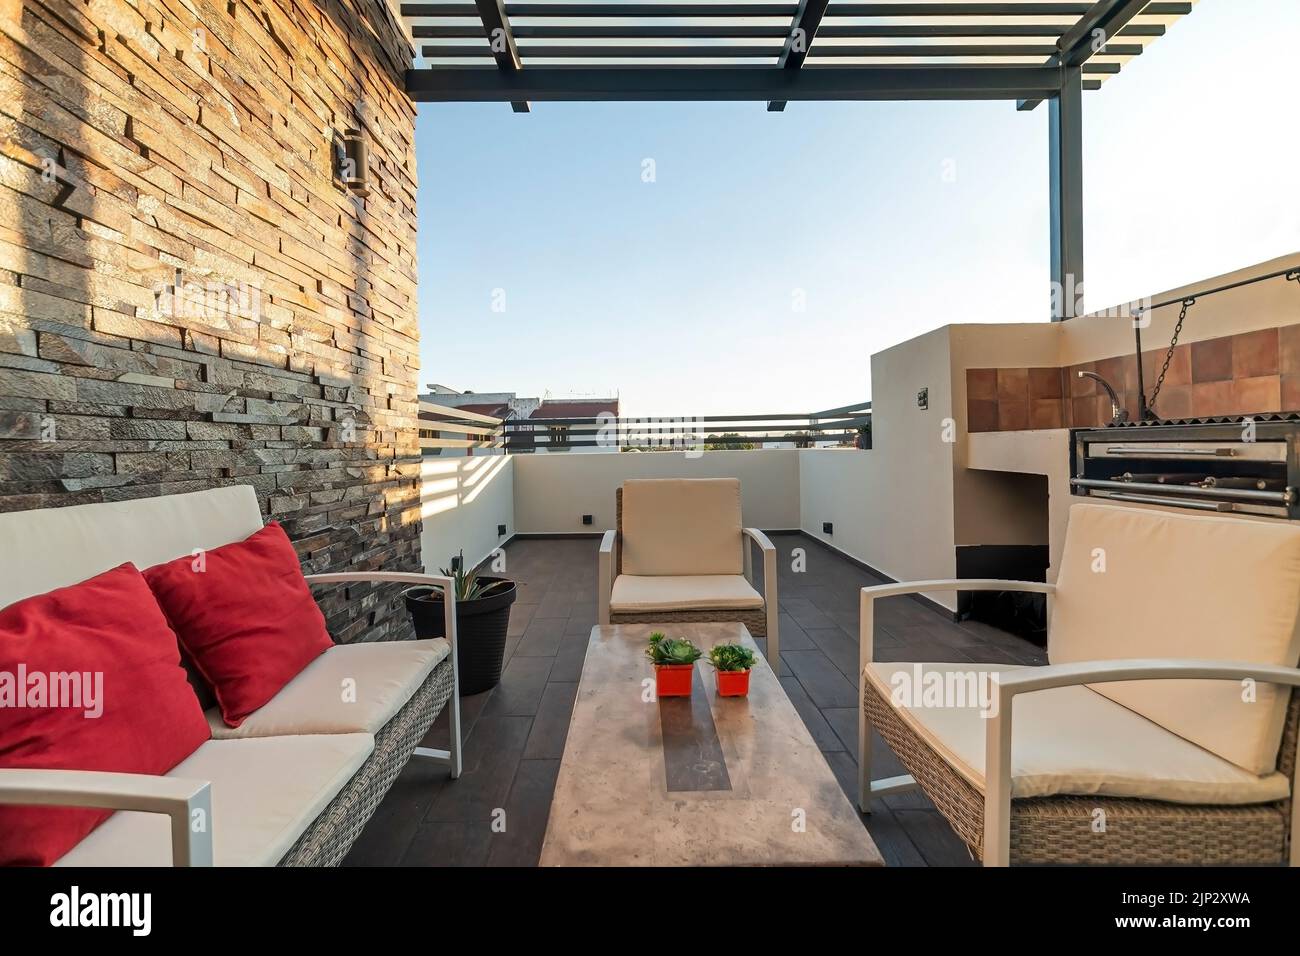 Terrasse mit Gartenmöbeln, Stein an einer Wand, können Sie den Himmel sehen, Grillplatz, Stahl Pergola Stockfoto